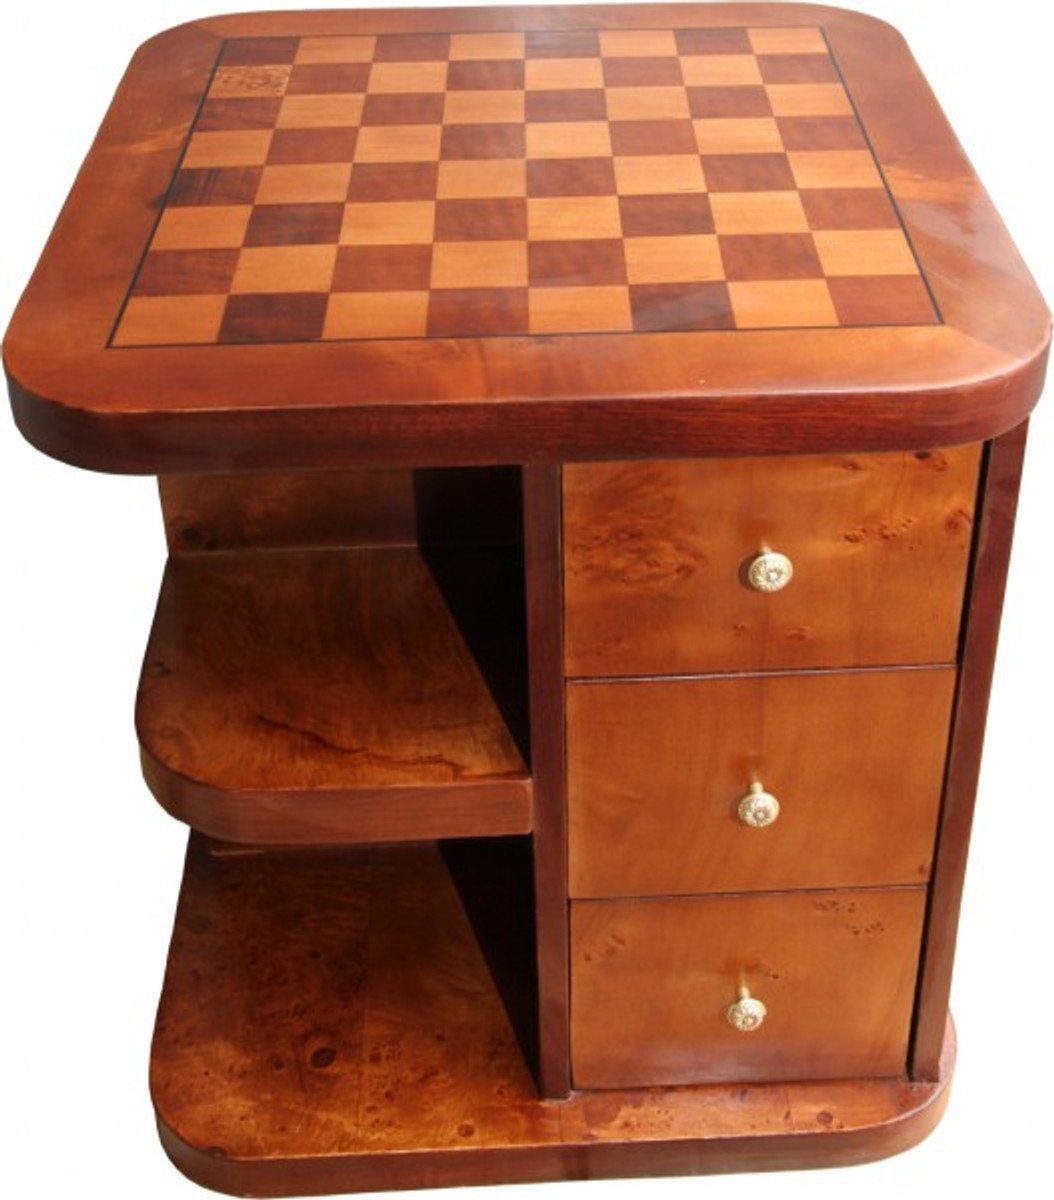 Casa Padrino Gamingtisch Art Deco Spieltisch Schach / Dame Mahagoni Mod2 L 50 x B 50 x H 55 cm - Möbel Antik Stil Barock | Computertische